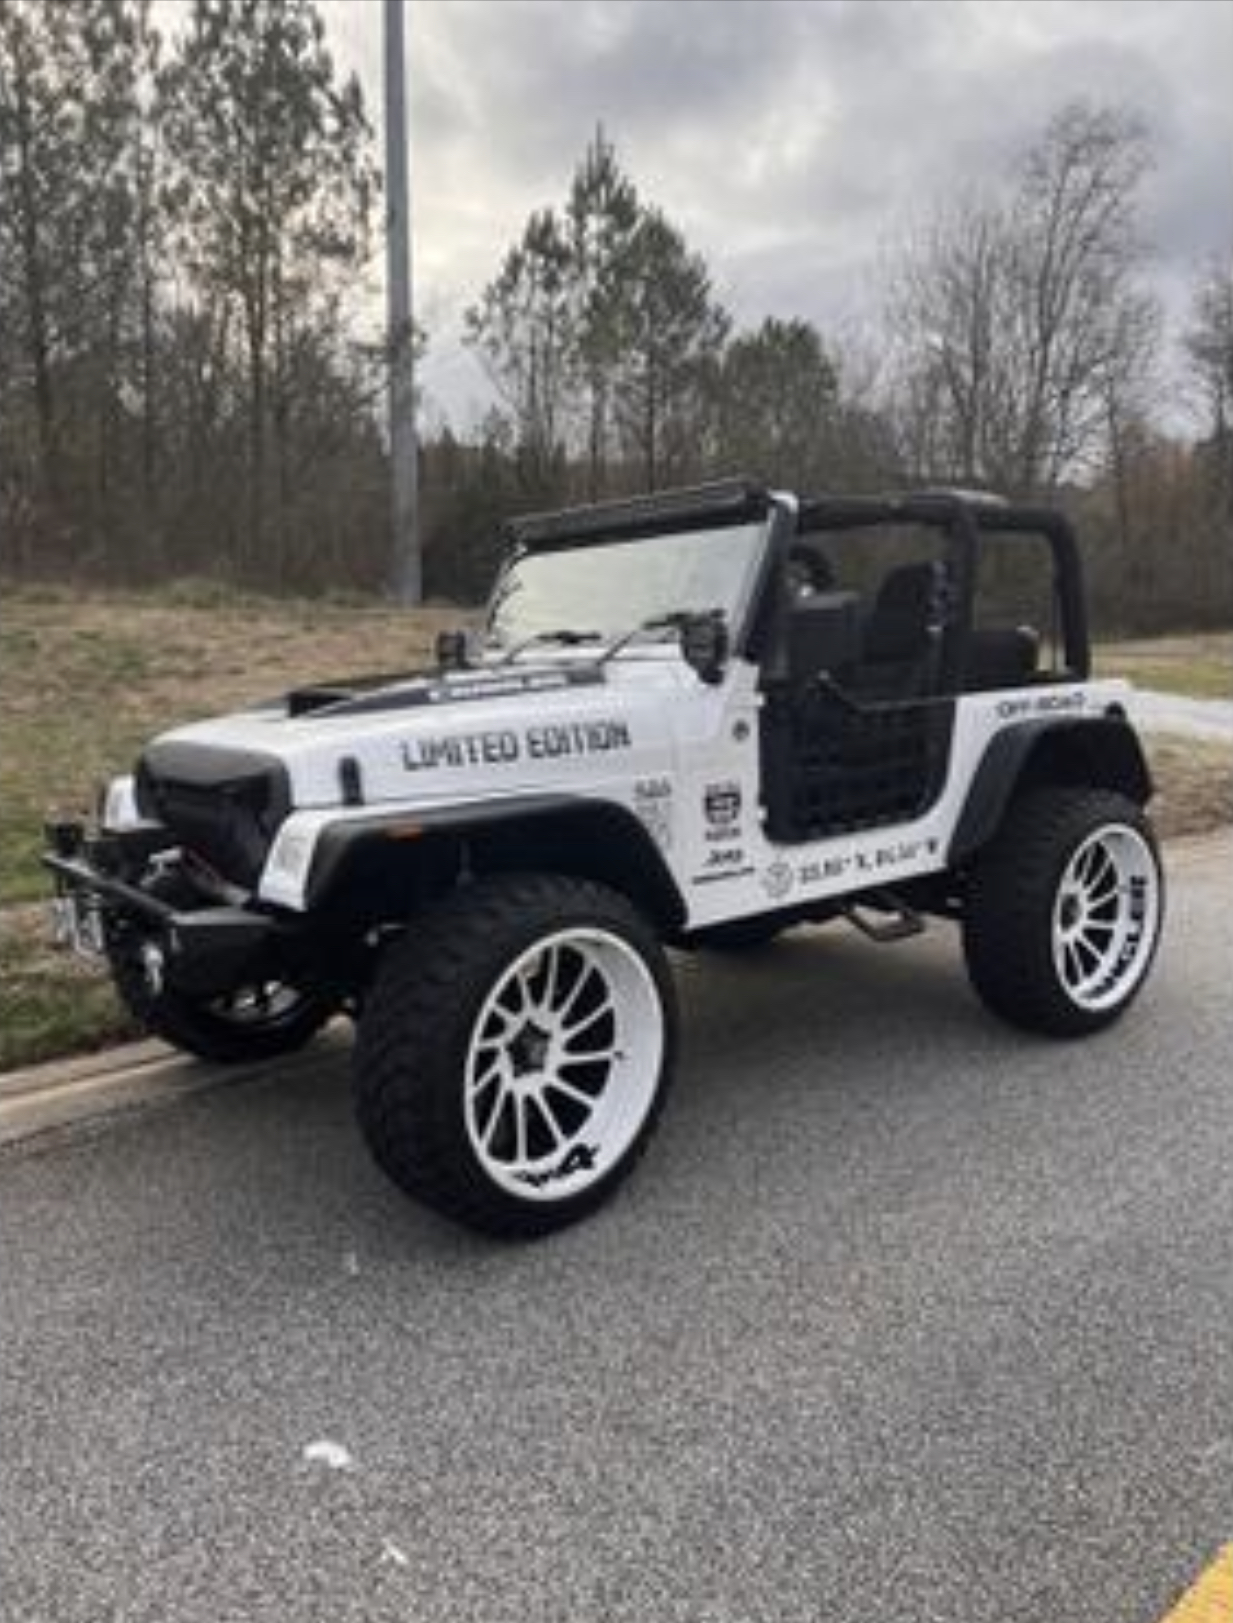 Used Jeep Wrangler for Sale in Atlanta, GA Under $30,000 